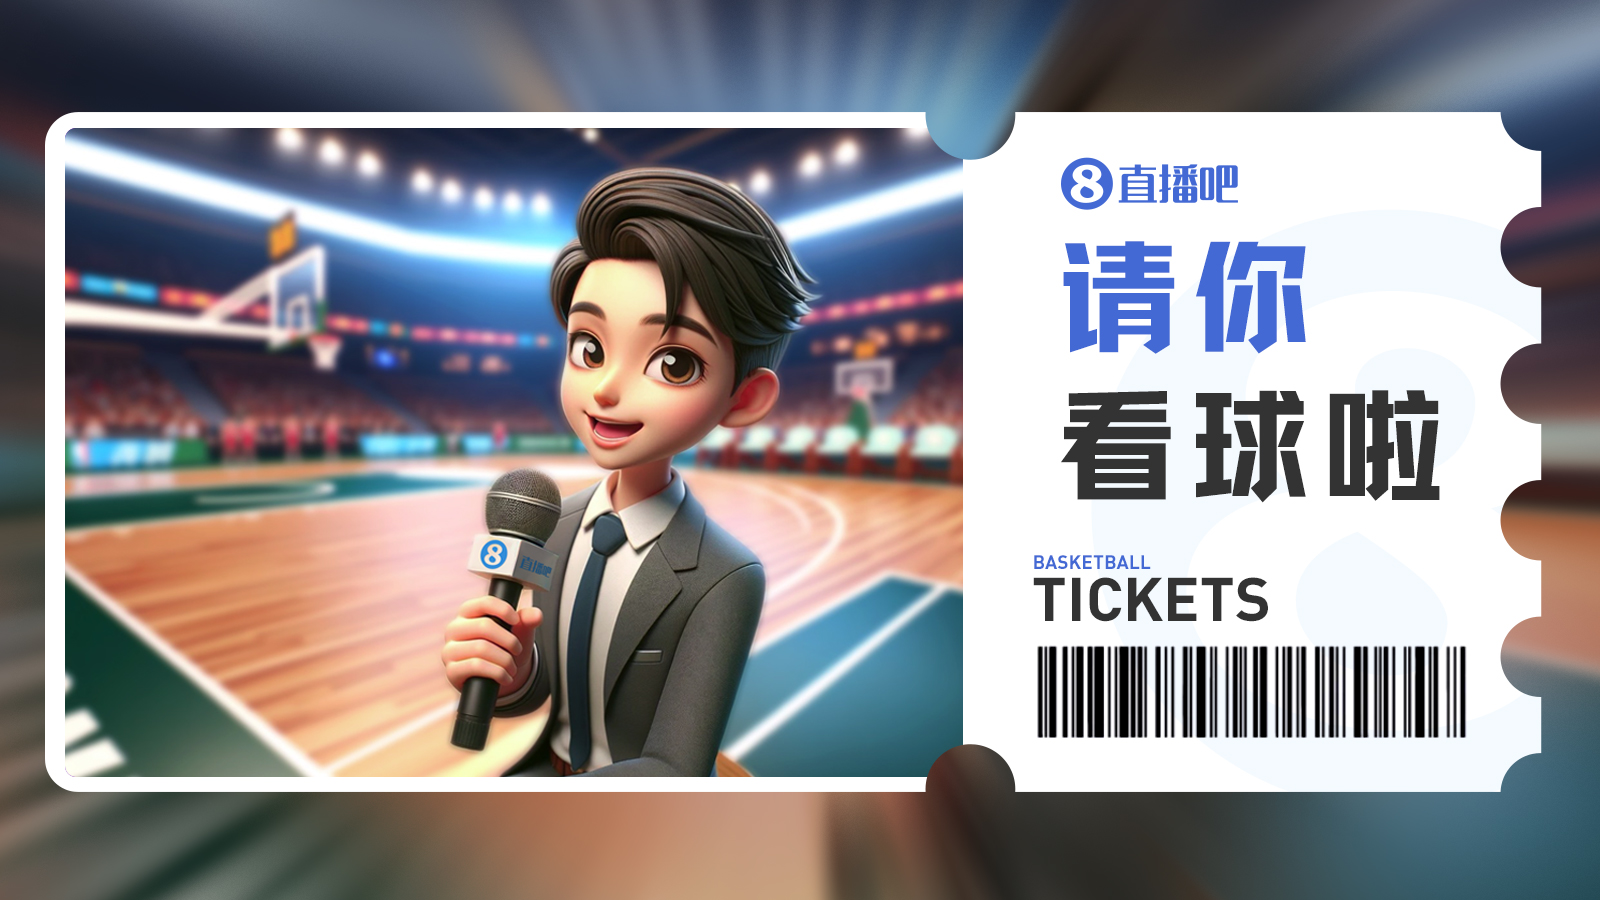 请你看球第6期留言抽3月24日深圳vs广州免费门票